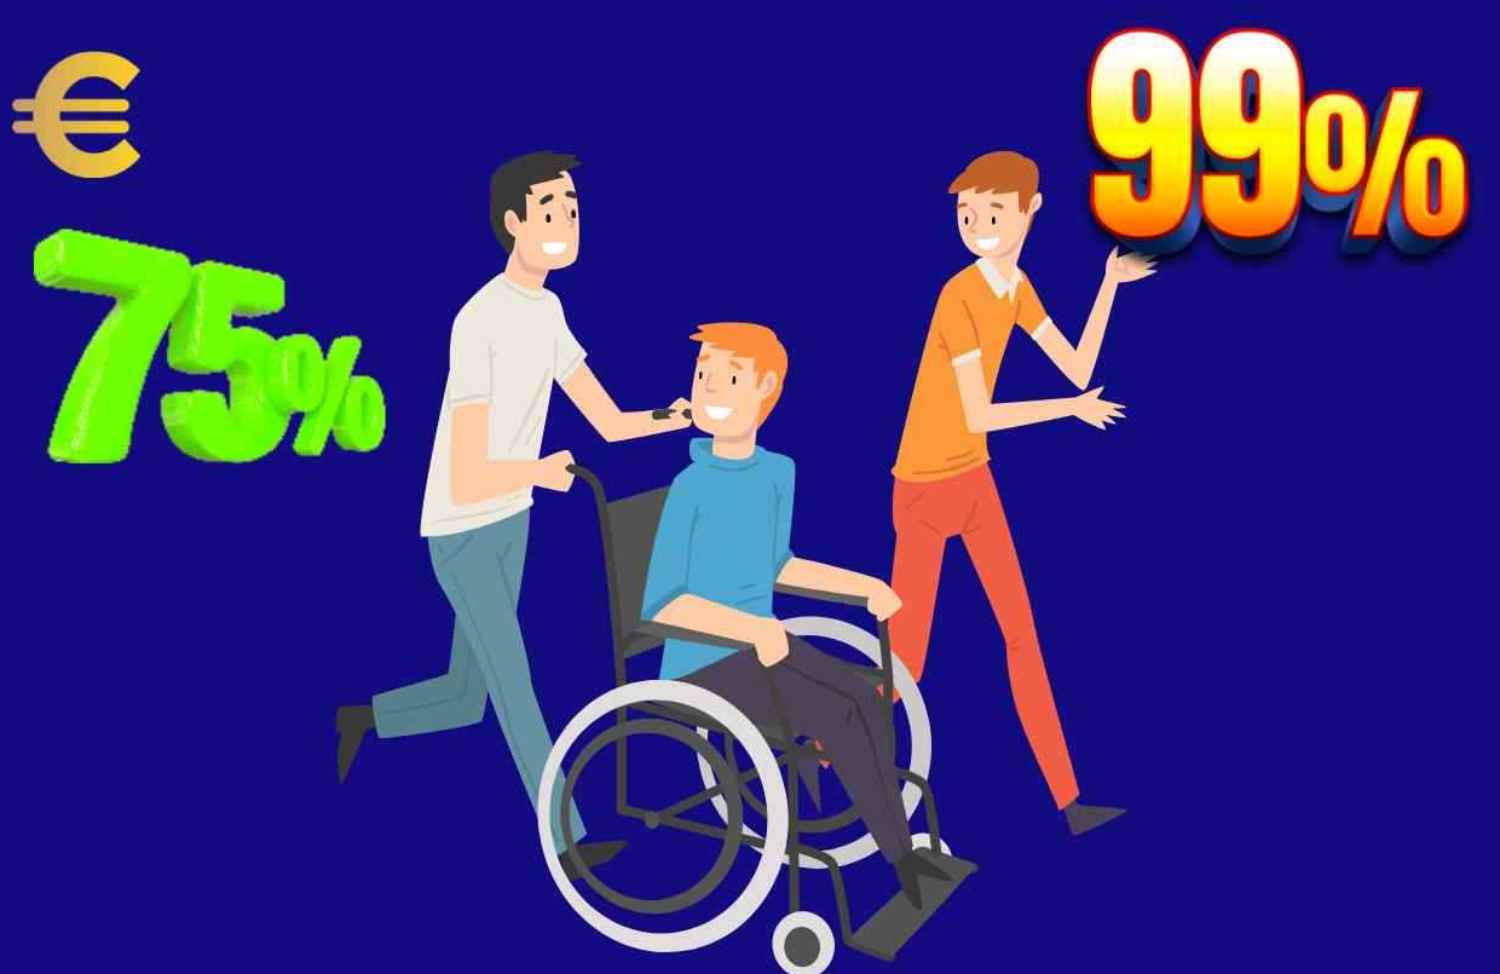 invalidità civile percentuali